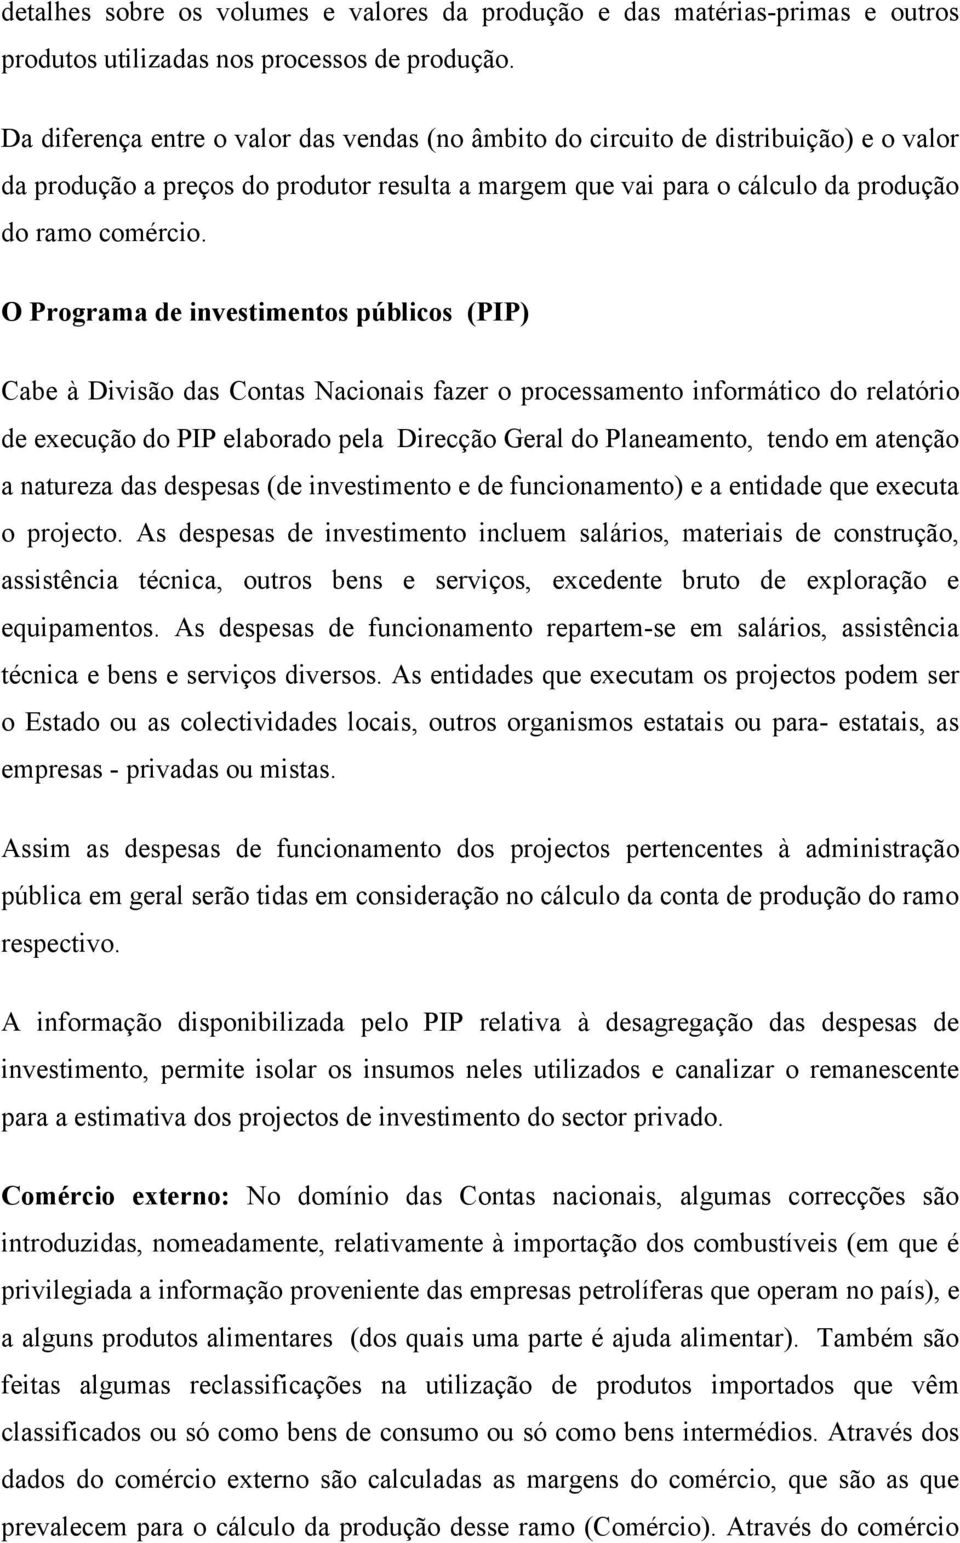 O Programa de investimentos públicos (PIP) Cabe à Divisão das Contas Nacionais fazer o processamento informático do relatório de execução do PIP elaborado pela Direcção Geral do Planeamento, tendo em